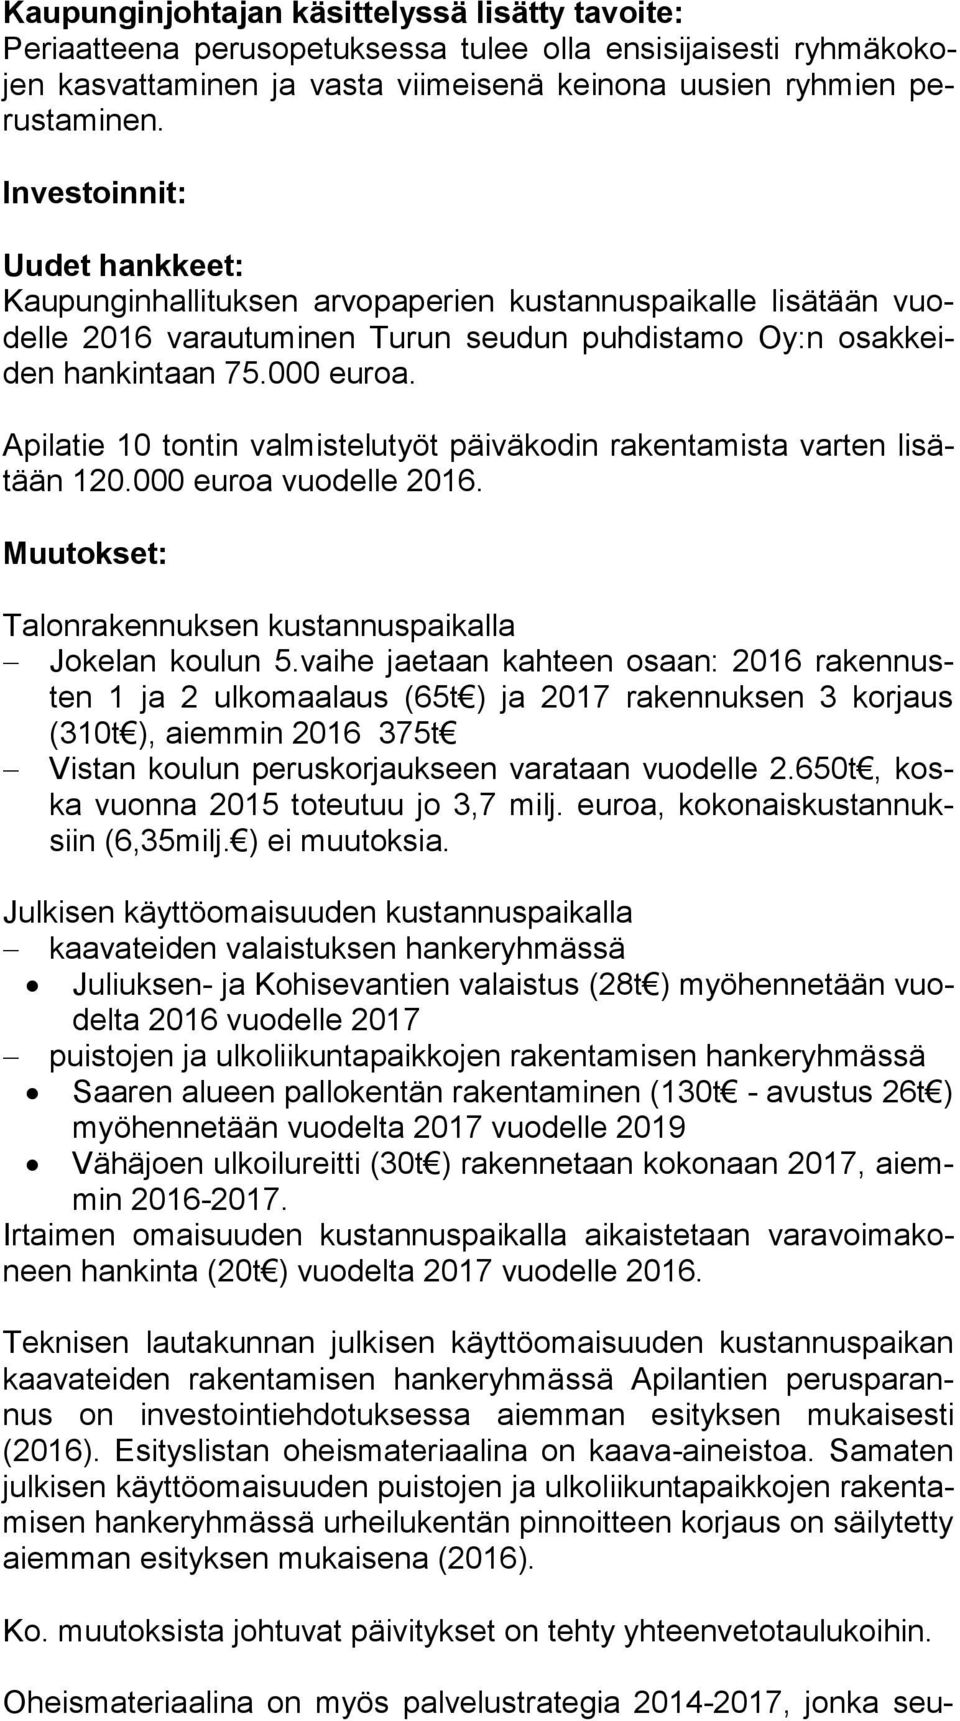 Apilatie 10 tontin valmistelutyöt päiväkodin rakentamista varten li sätään 120.000 euroa vuodelle 2016. Muutokset: Talonrakennuksen kustannuspaikalla Jokelan koulun 5.